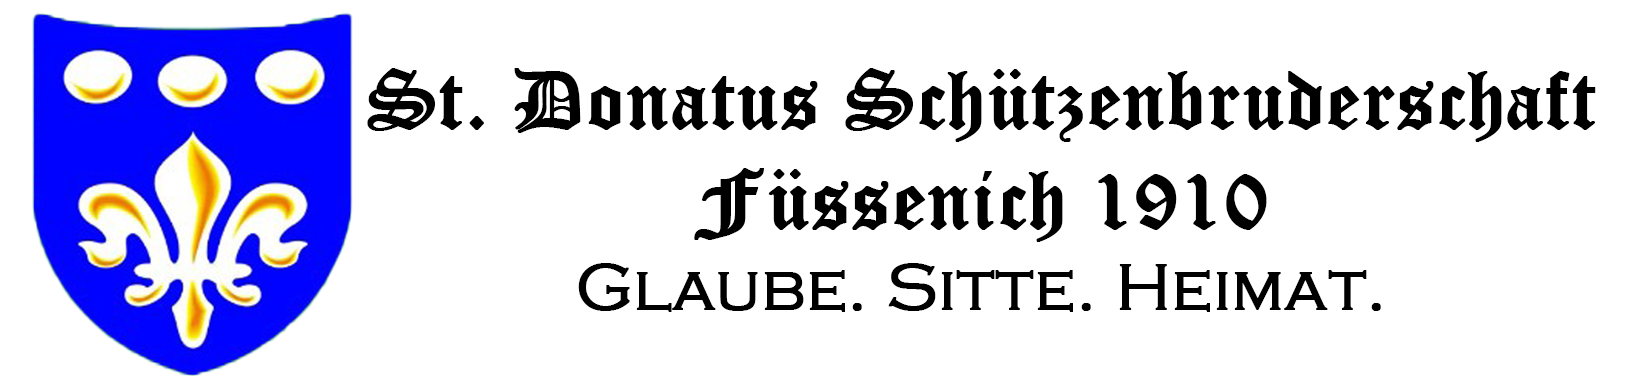 St. Donatus Schützenbruderschaft Füssenich 1910